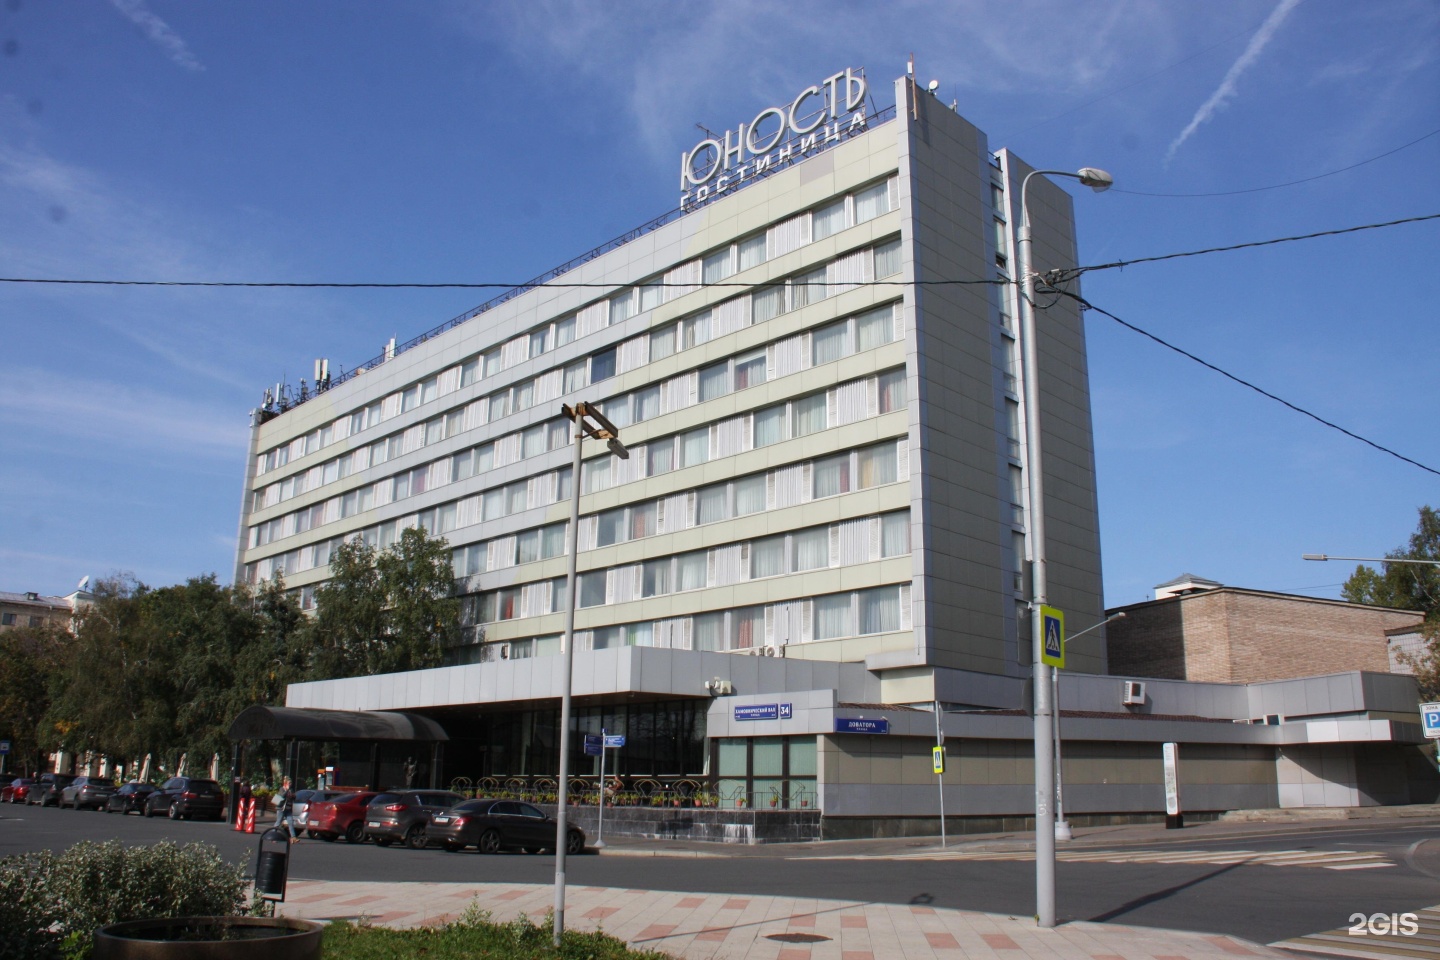 гостиница юность в москве